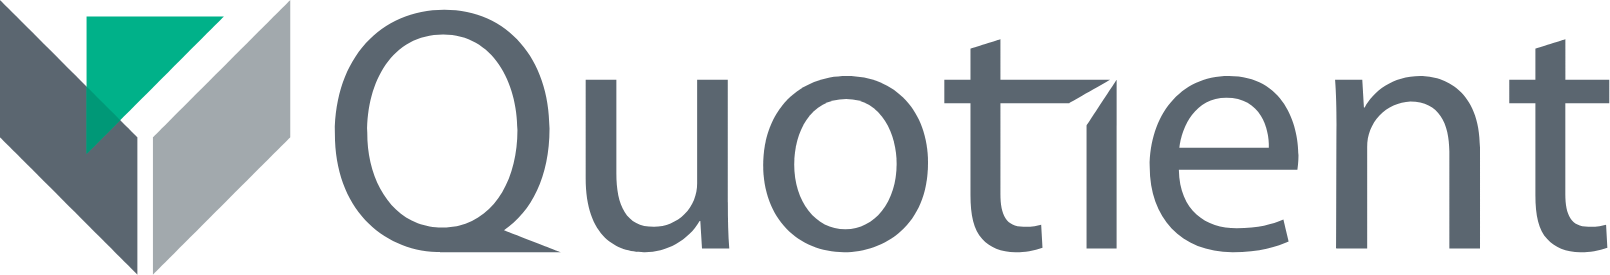 Quotient Technology
 logo large (transparent PNG)